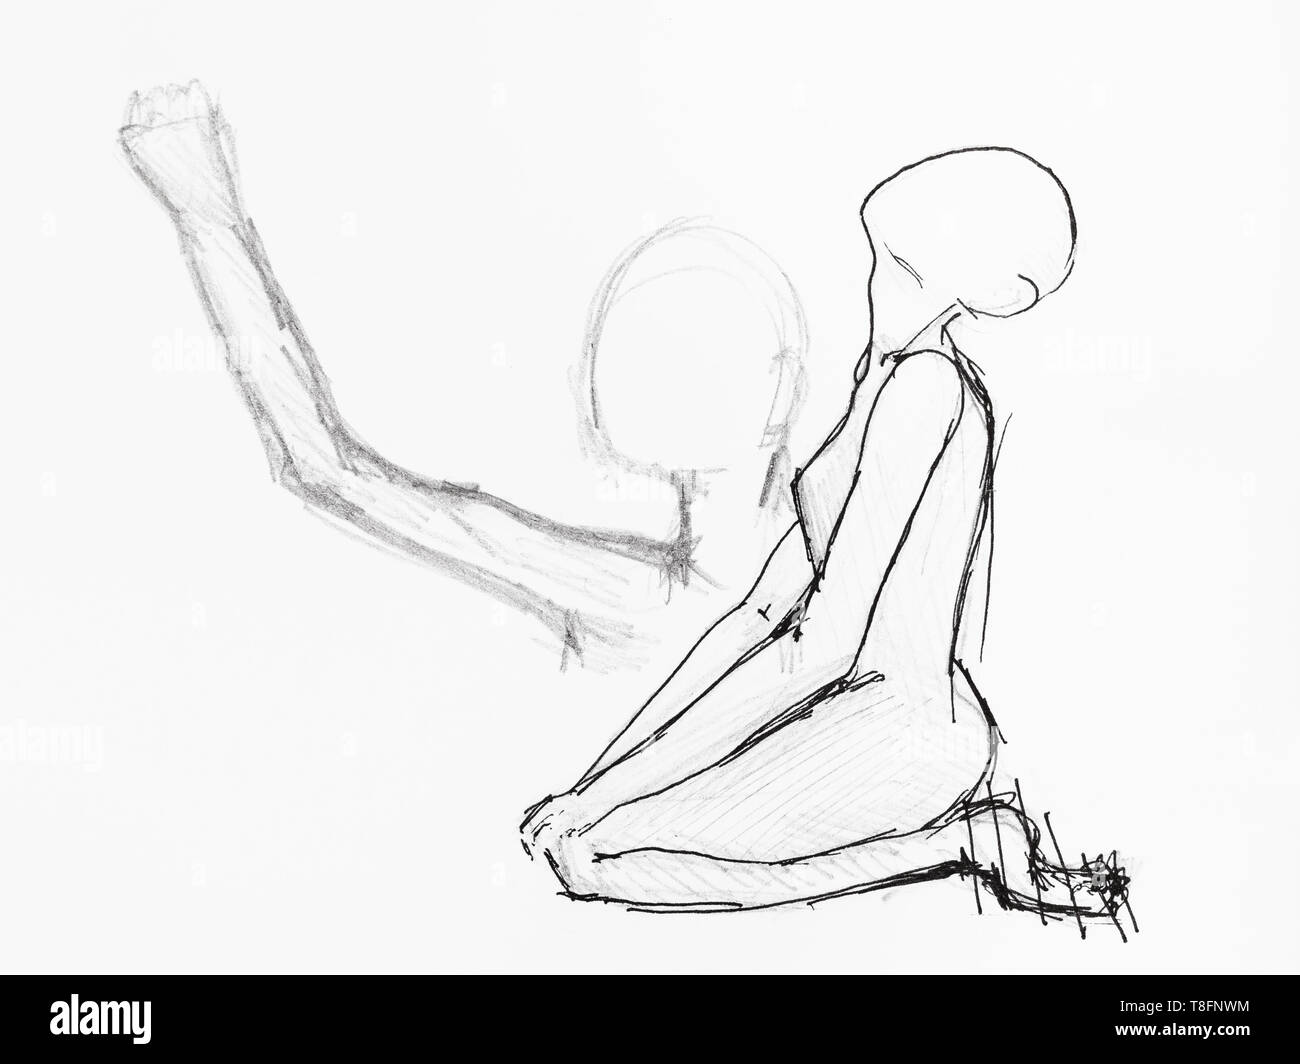 Schizzo di inginocchiarsi di preghiera figura femminile disegnati a mano da nero a matita e inchiostro su carta bianca Foto Stock